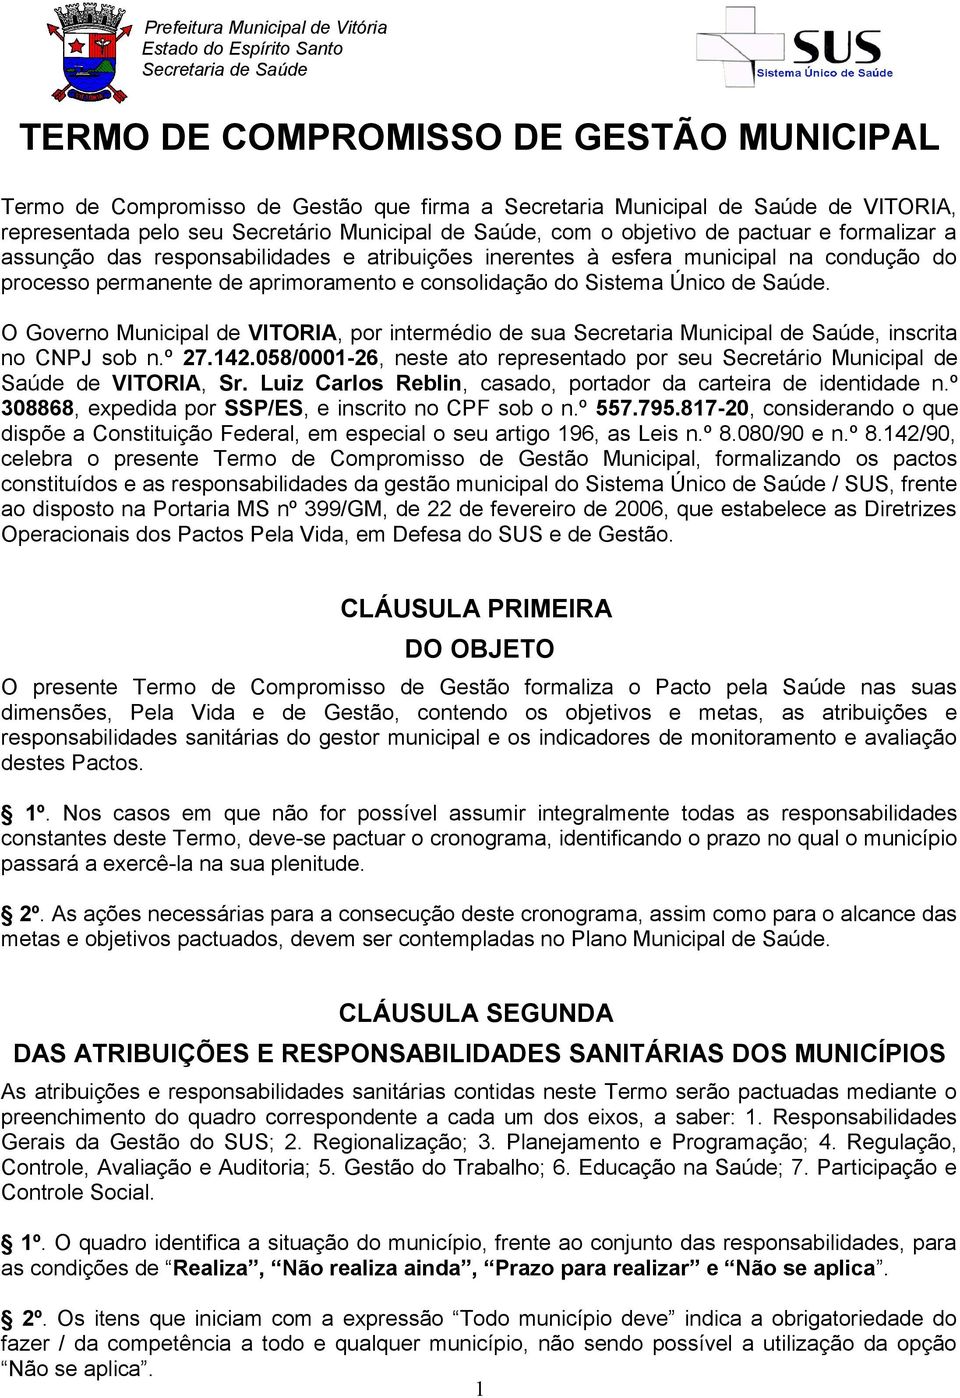 O Governo Municipal de VITORIA, por intermédio de sua Secretaria Municipal de Saúde, inscrita no CNPJ sob n.º 27.142.